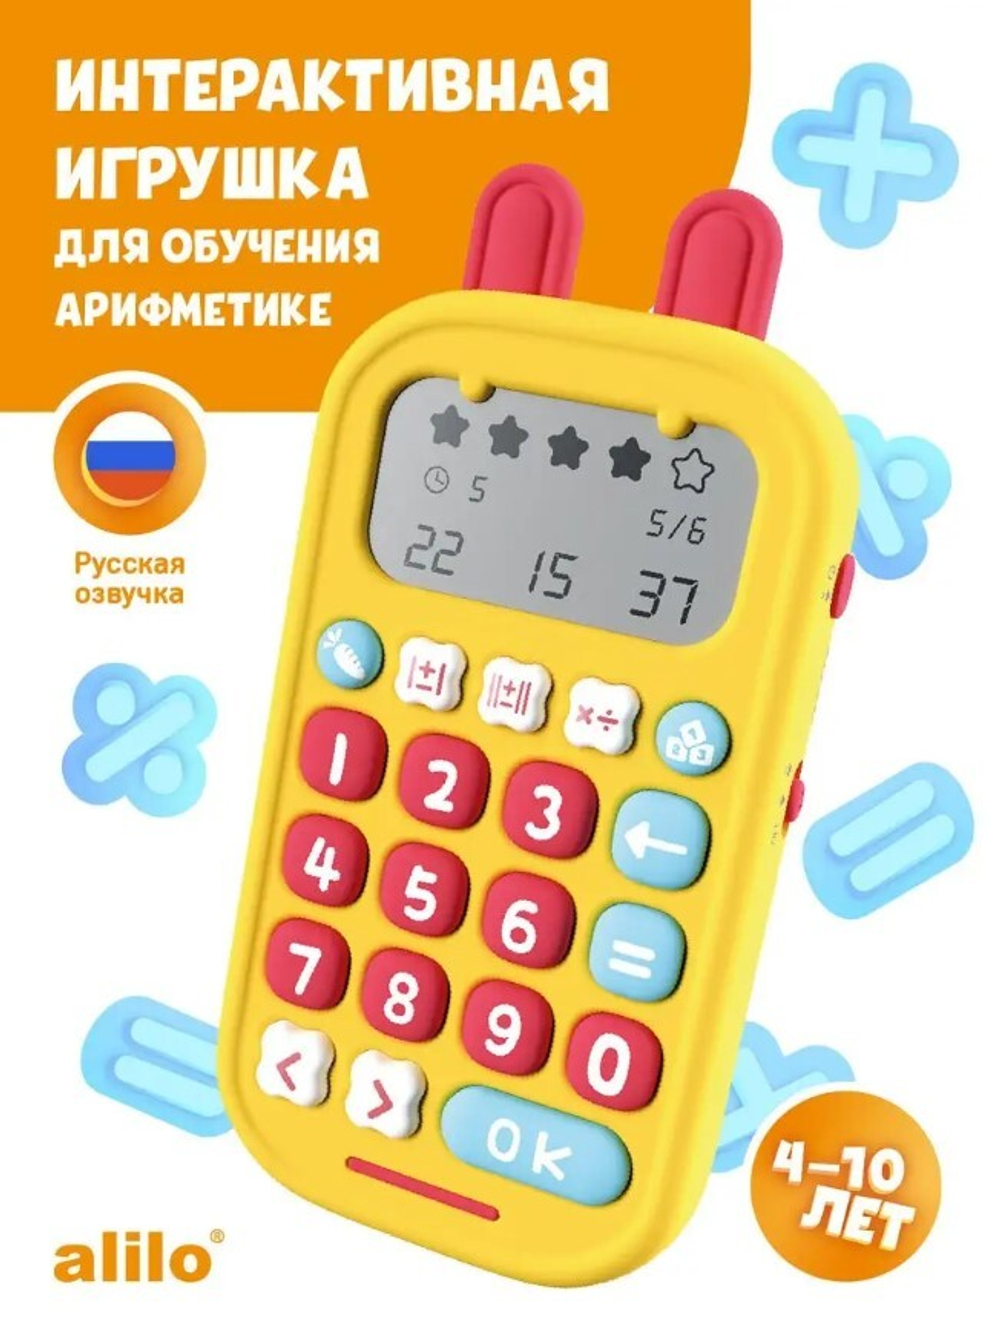 Детский обучающий калькулятор alilo Зайка-Математик